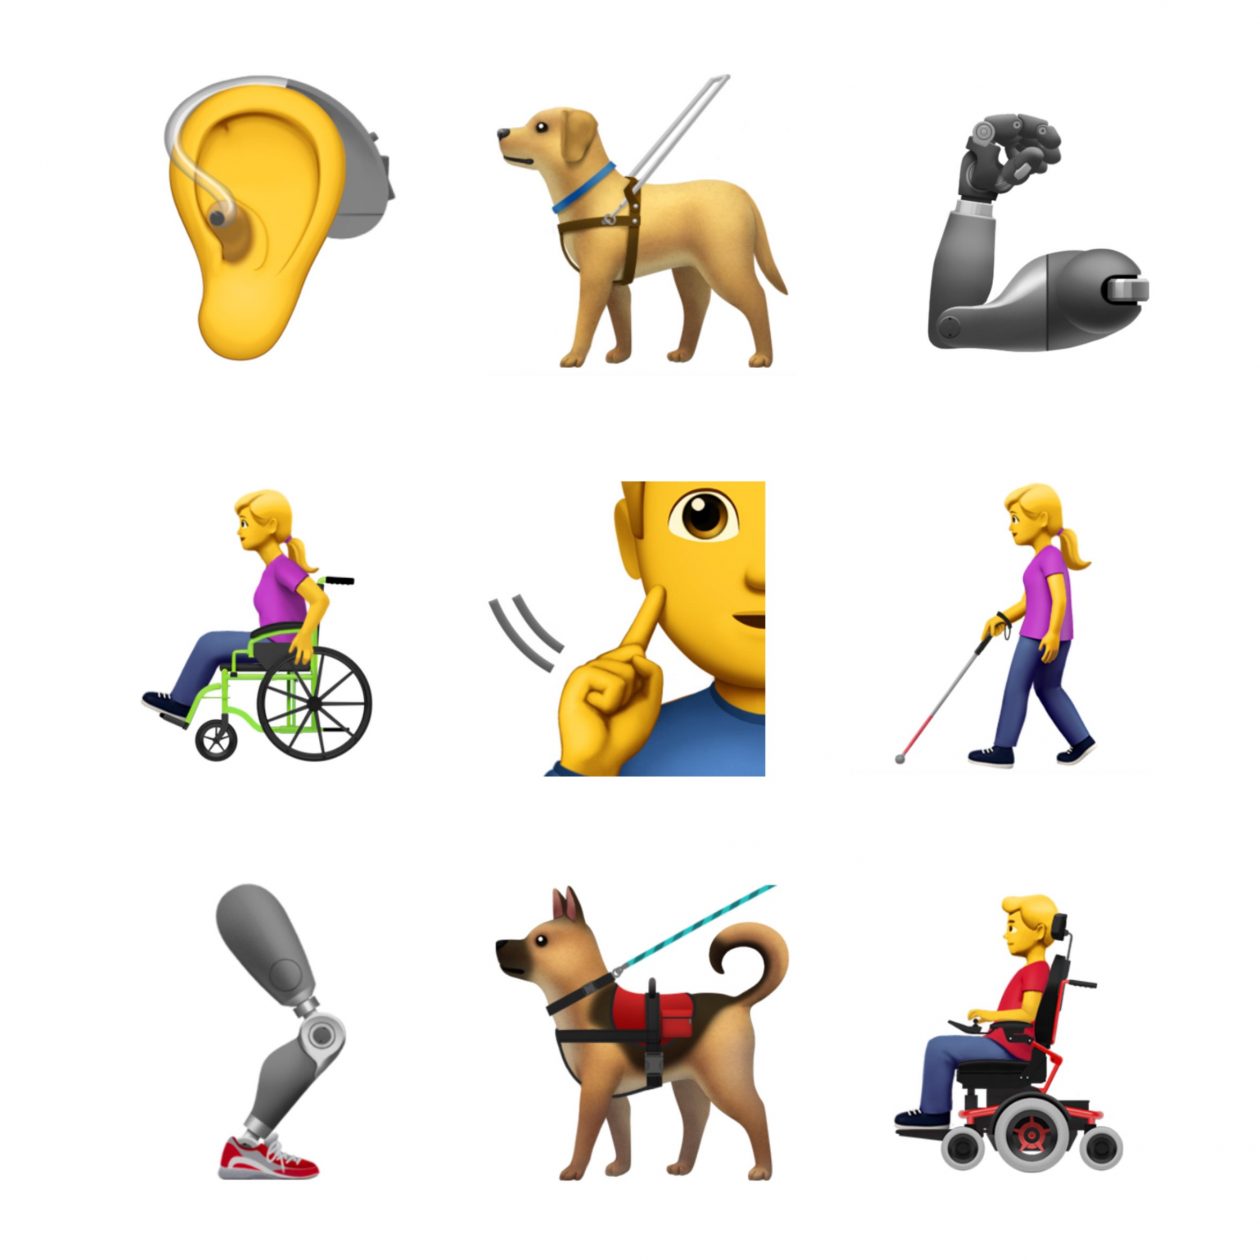 Apple pakkus puuetega inimeste paremaks esindamiseks välja uue emotikonigrupi